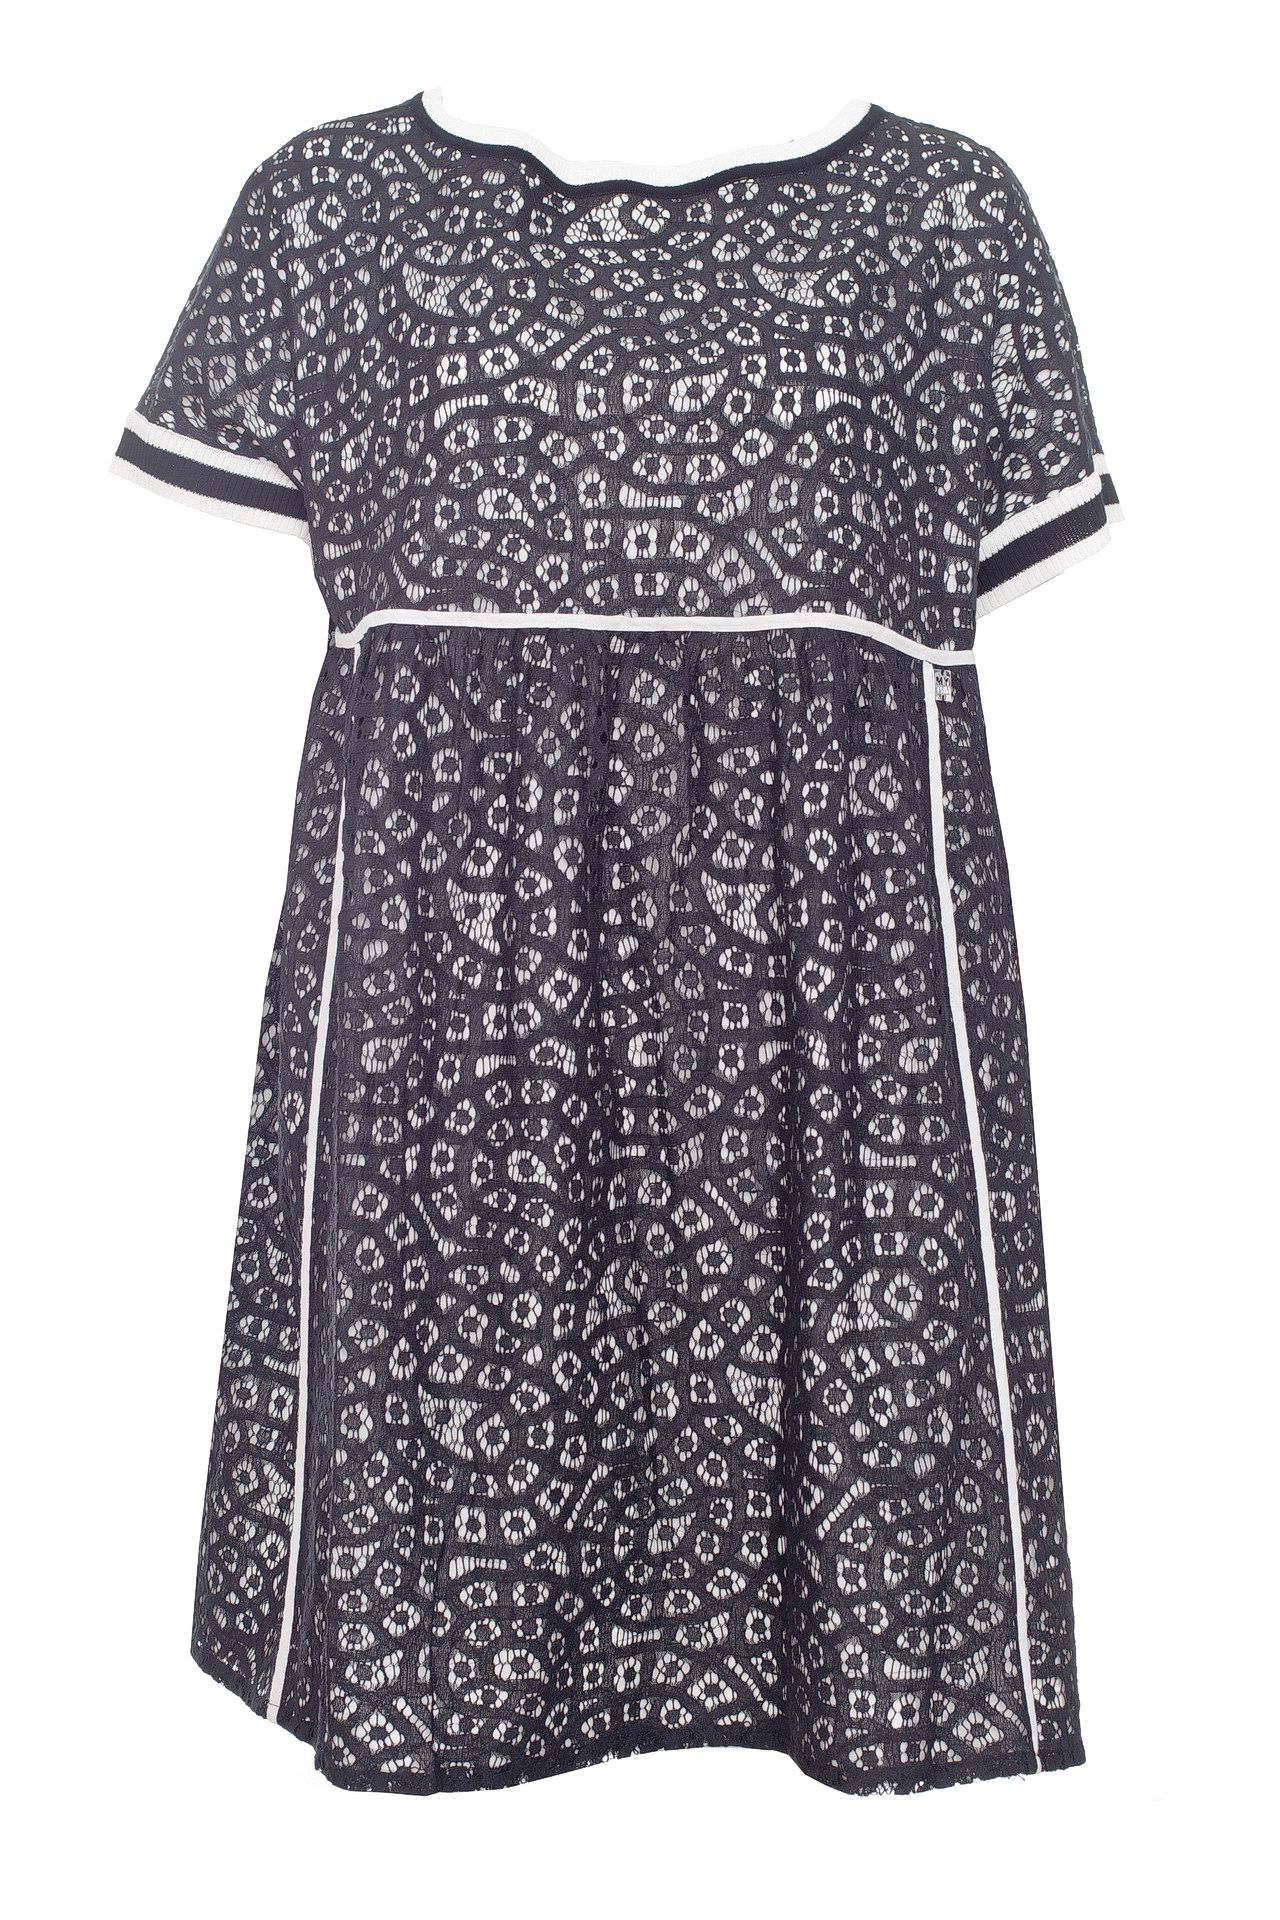 Одежда женская Платье TWIN-SET (YS83DA/18.2). Купить за 8745 руб.